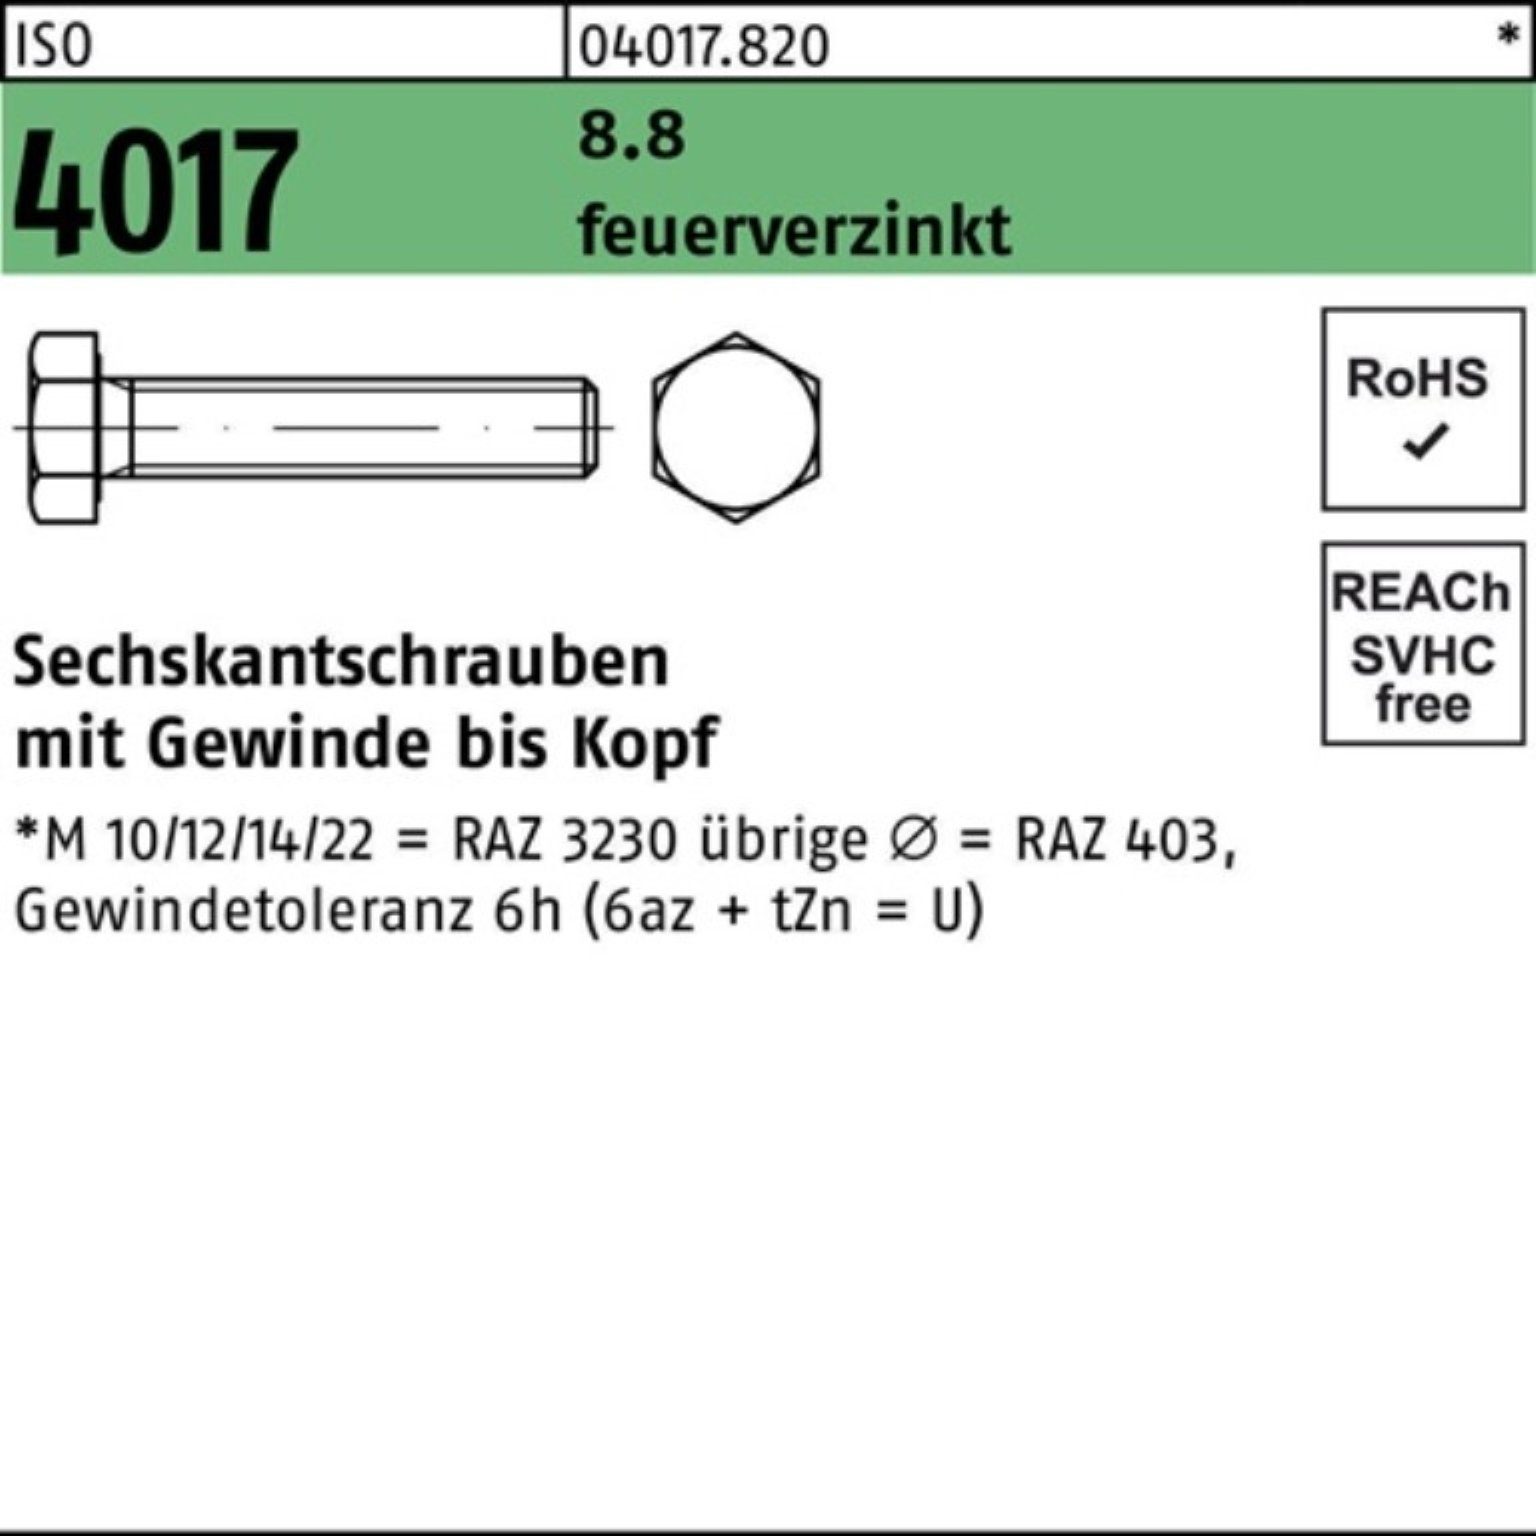 Sechskantschraube Sechskantschraube 25 VG 100er 4017 45 ISO St Bufab feuerverz. 8.8 Pack M20x